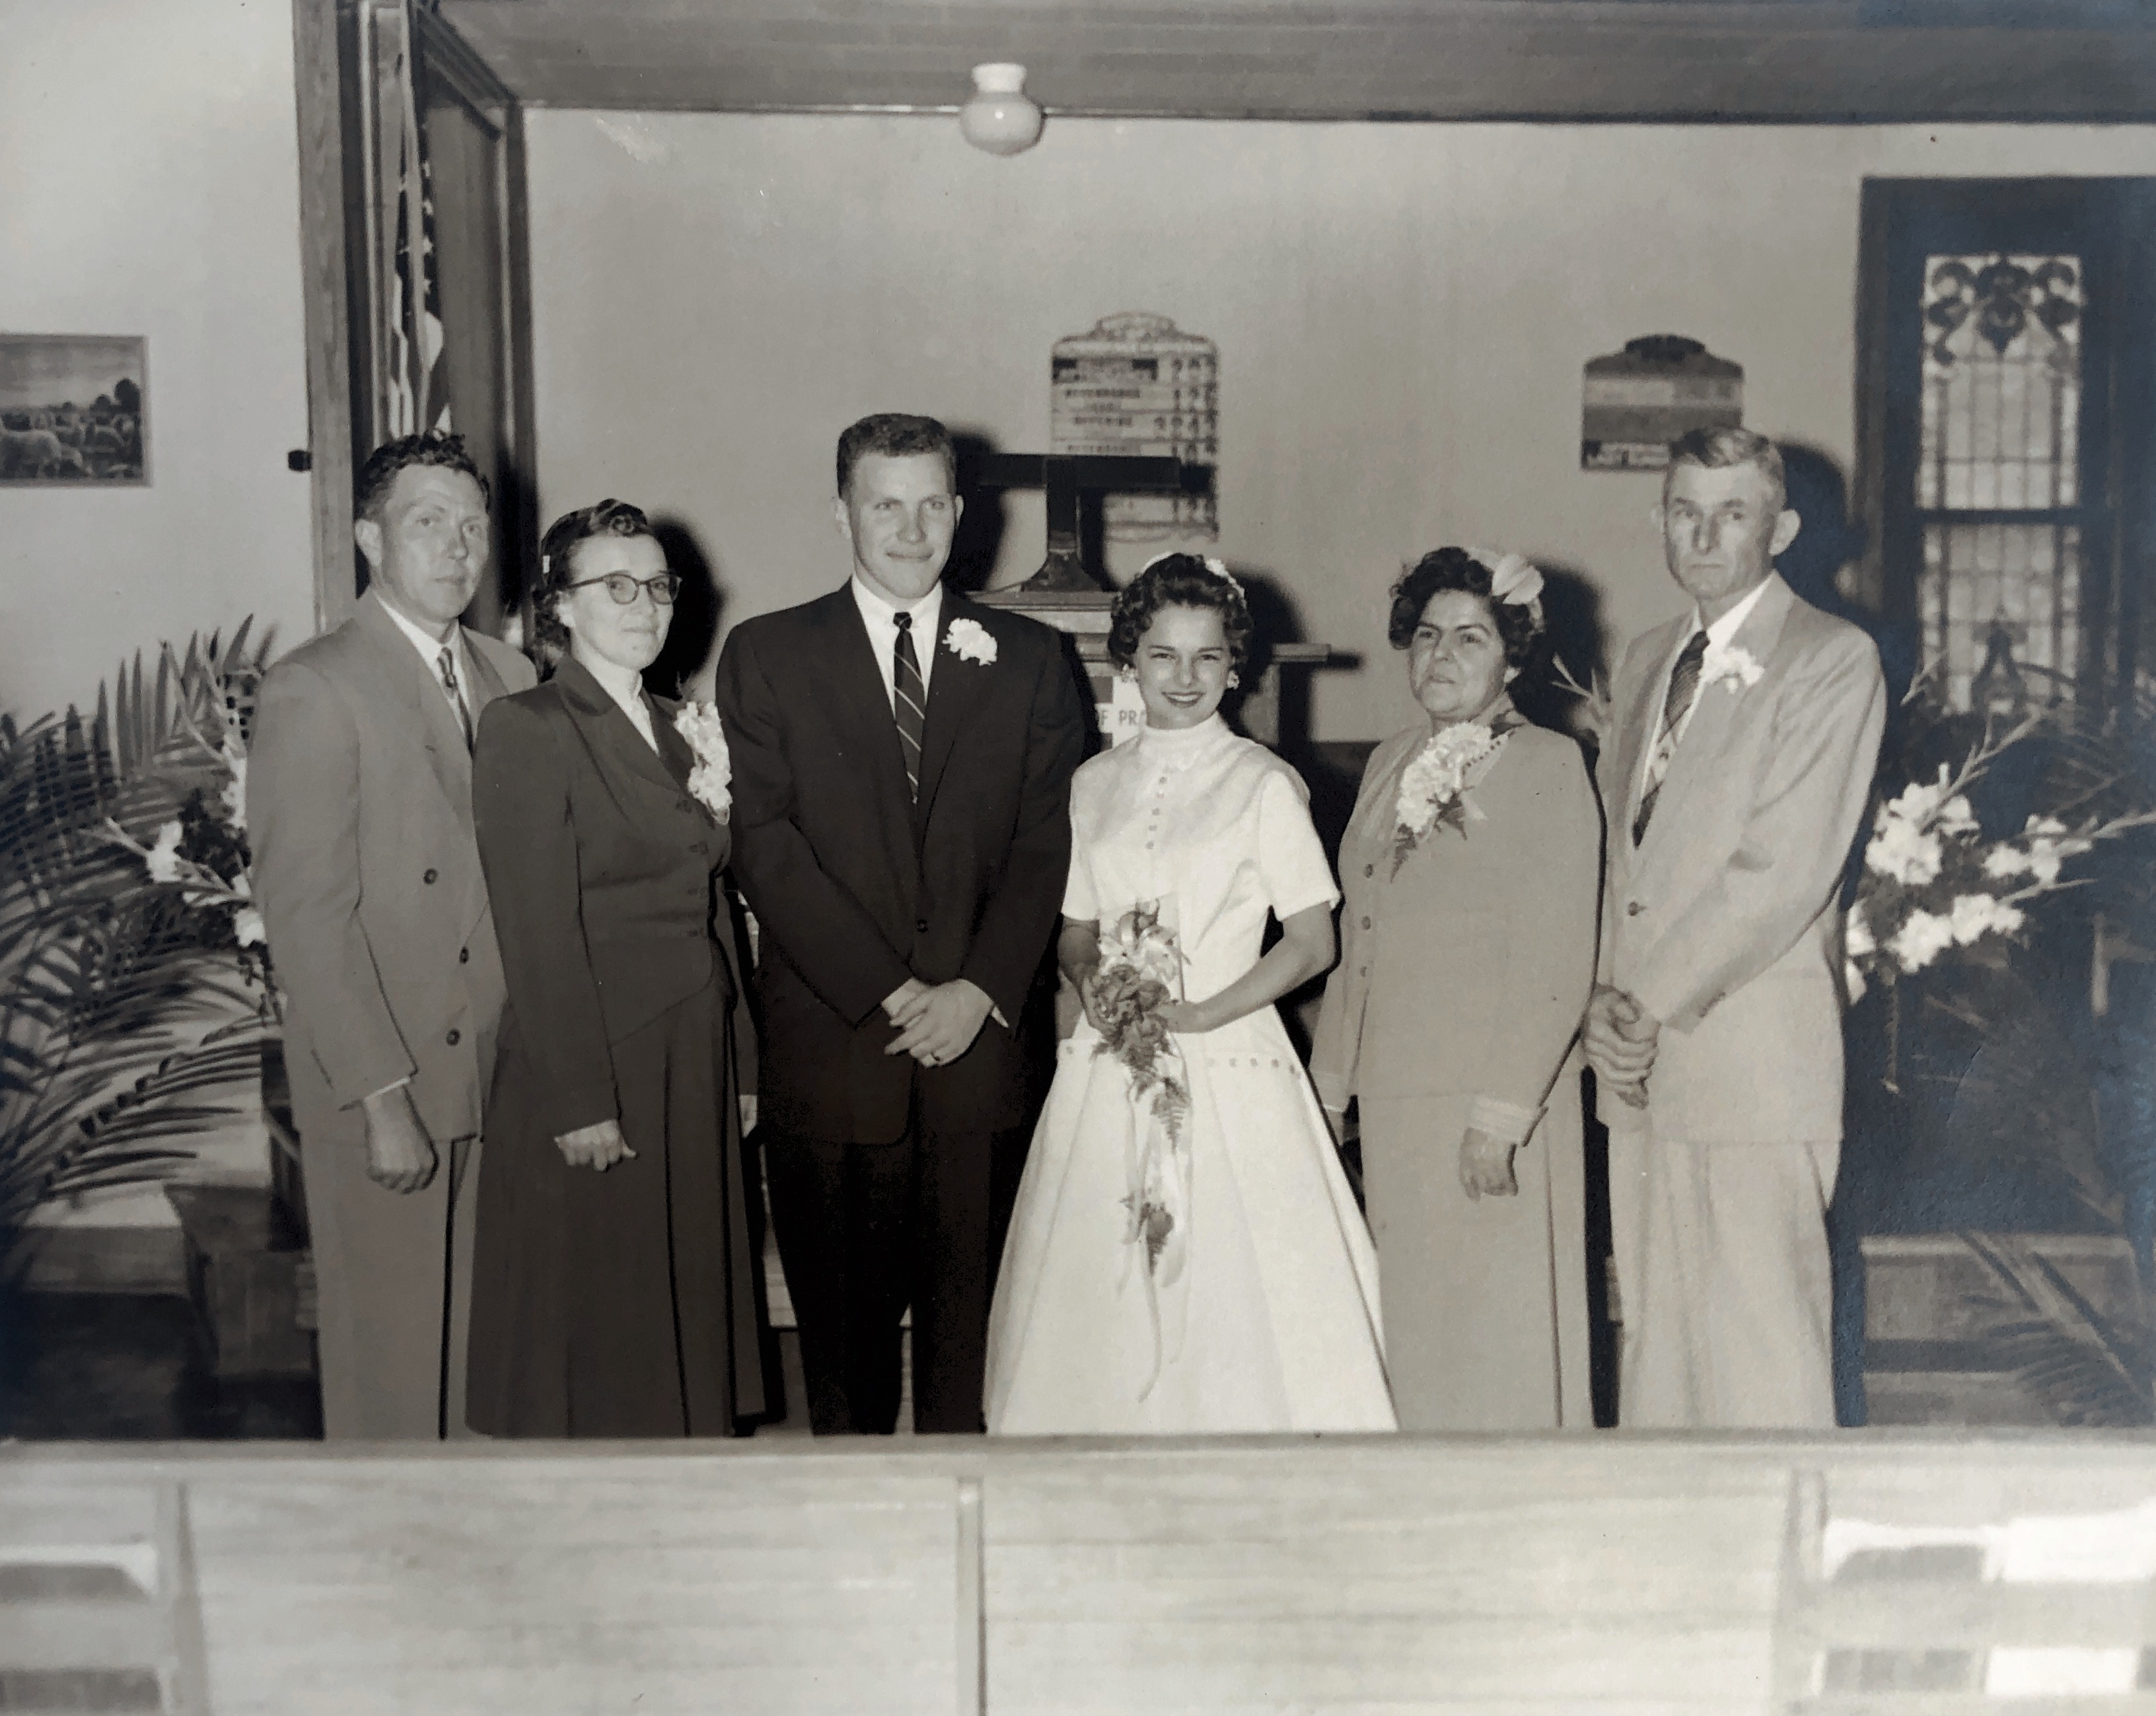 Jeri Kyle Adkins wed Jim Adkins. Left to right: Raymond V. Adkins, Vivian N Adkins, Jim, Jeri, Lois Kyle & Otis B. Kyle Feb 11, 1956.
